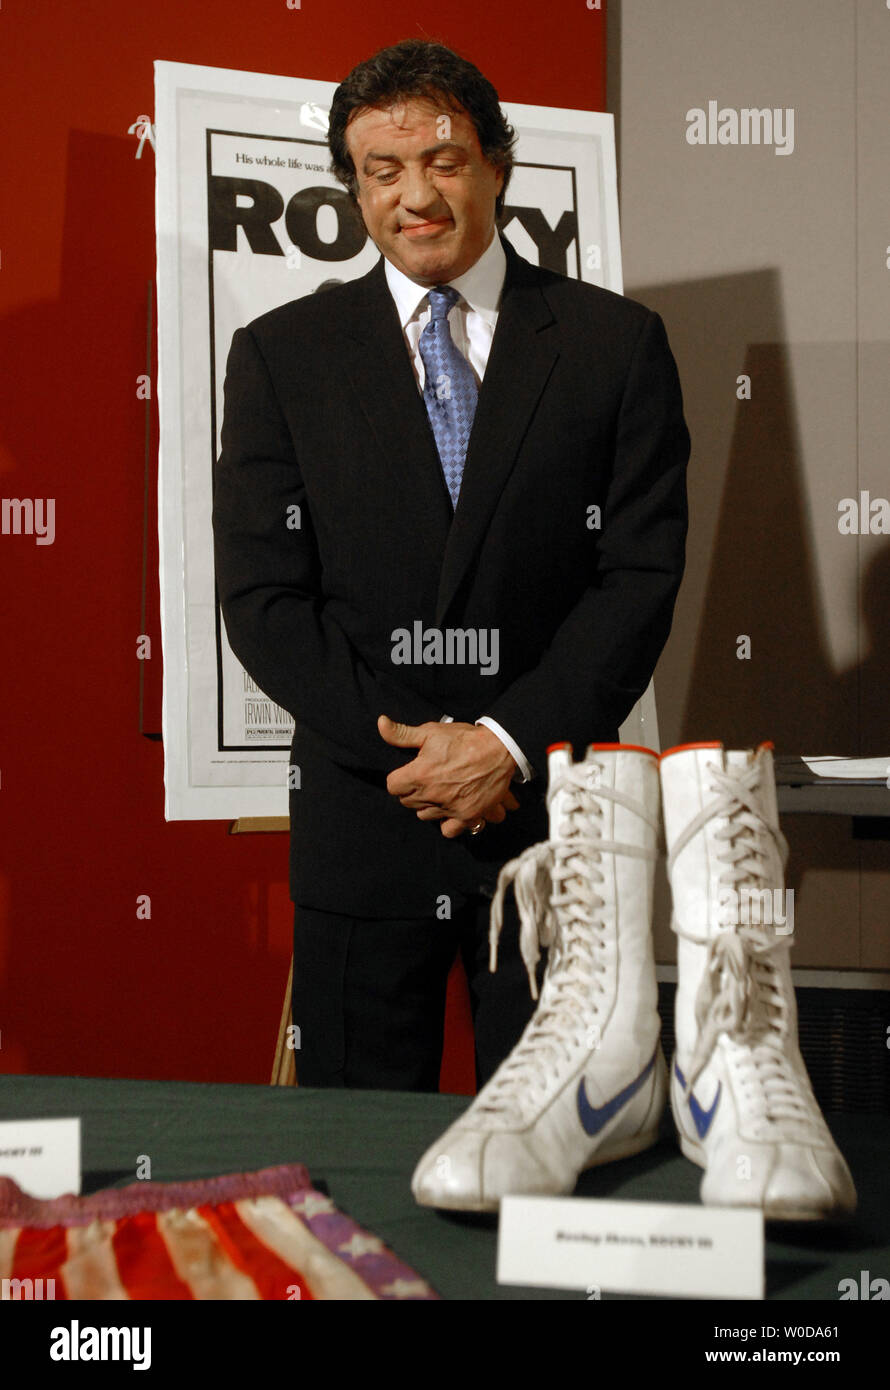 L'acteur et réalisateur Sylvester Stallone ressemble à son short et des bottes de "Rocky III" après avoir fait don de ces et d'autres objets de l'Academy Award-winning 'Rocky' films pour le Smithsonian National Museum of American History à Washington le 5 décembre 2006. (Photo d'UPI/Roger L. Wollenberg) Banque D'Images